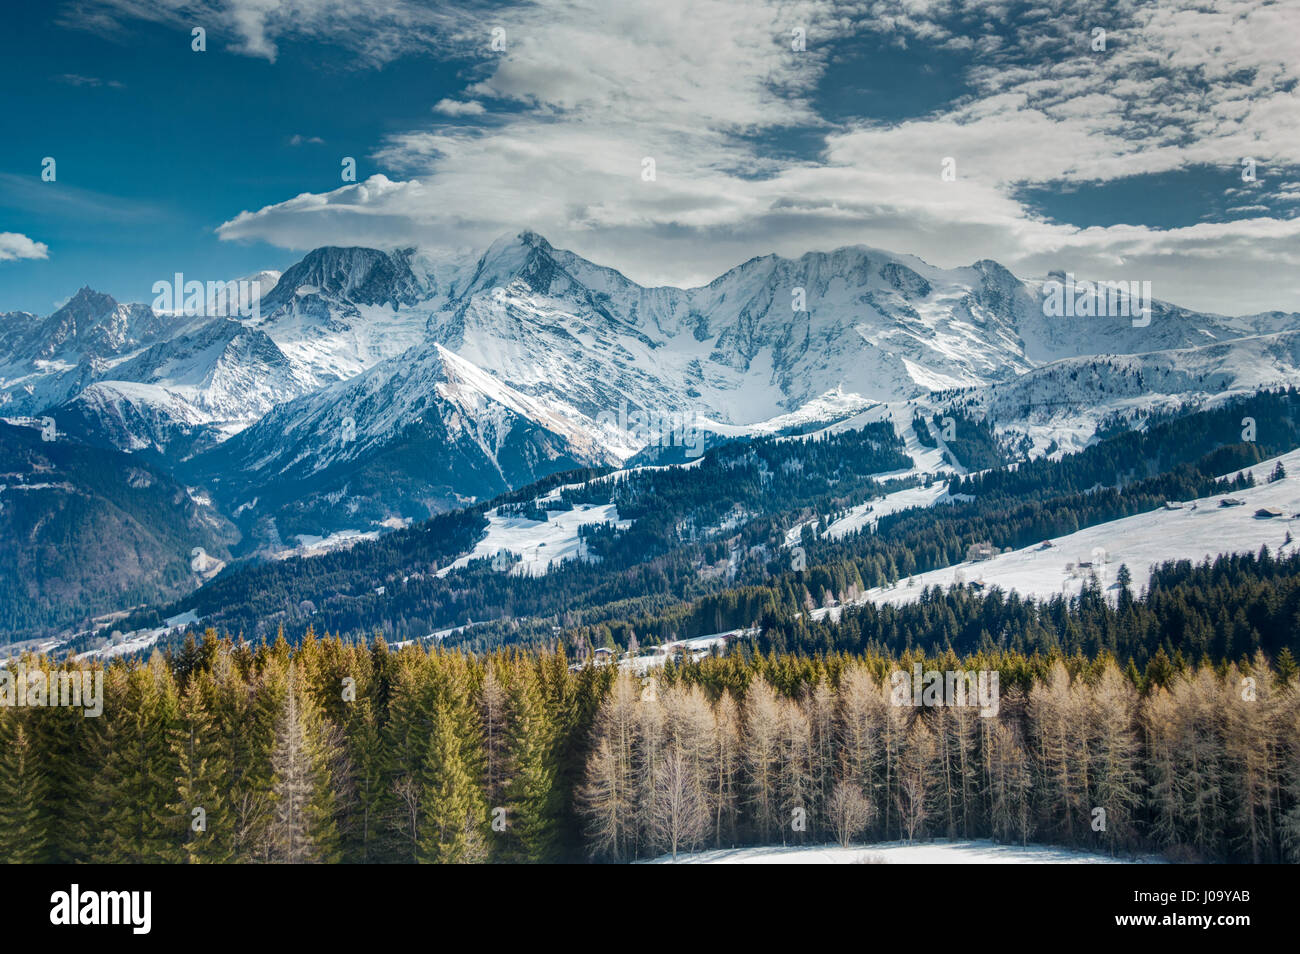 Hautes montagnes enneigées et des nuages bas dans la distance avec les arbres de premier plan dans les Alpes, Mont Blanc, Chamonix. Banque D'Images